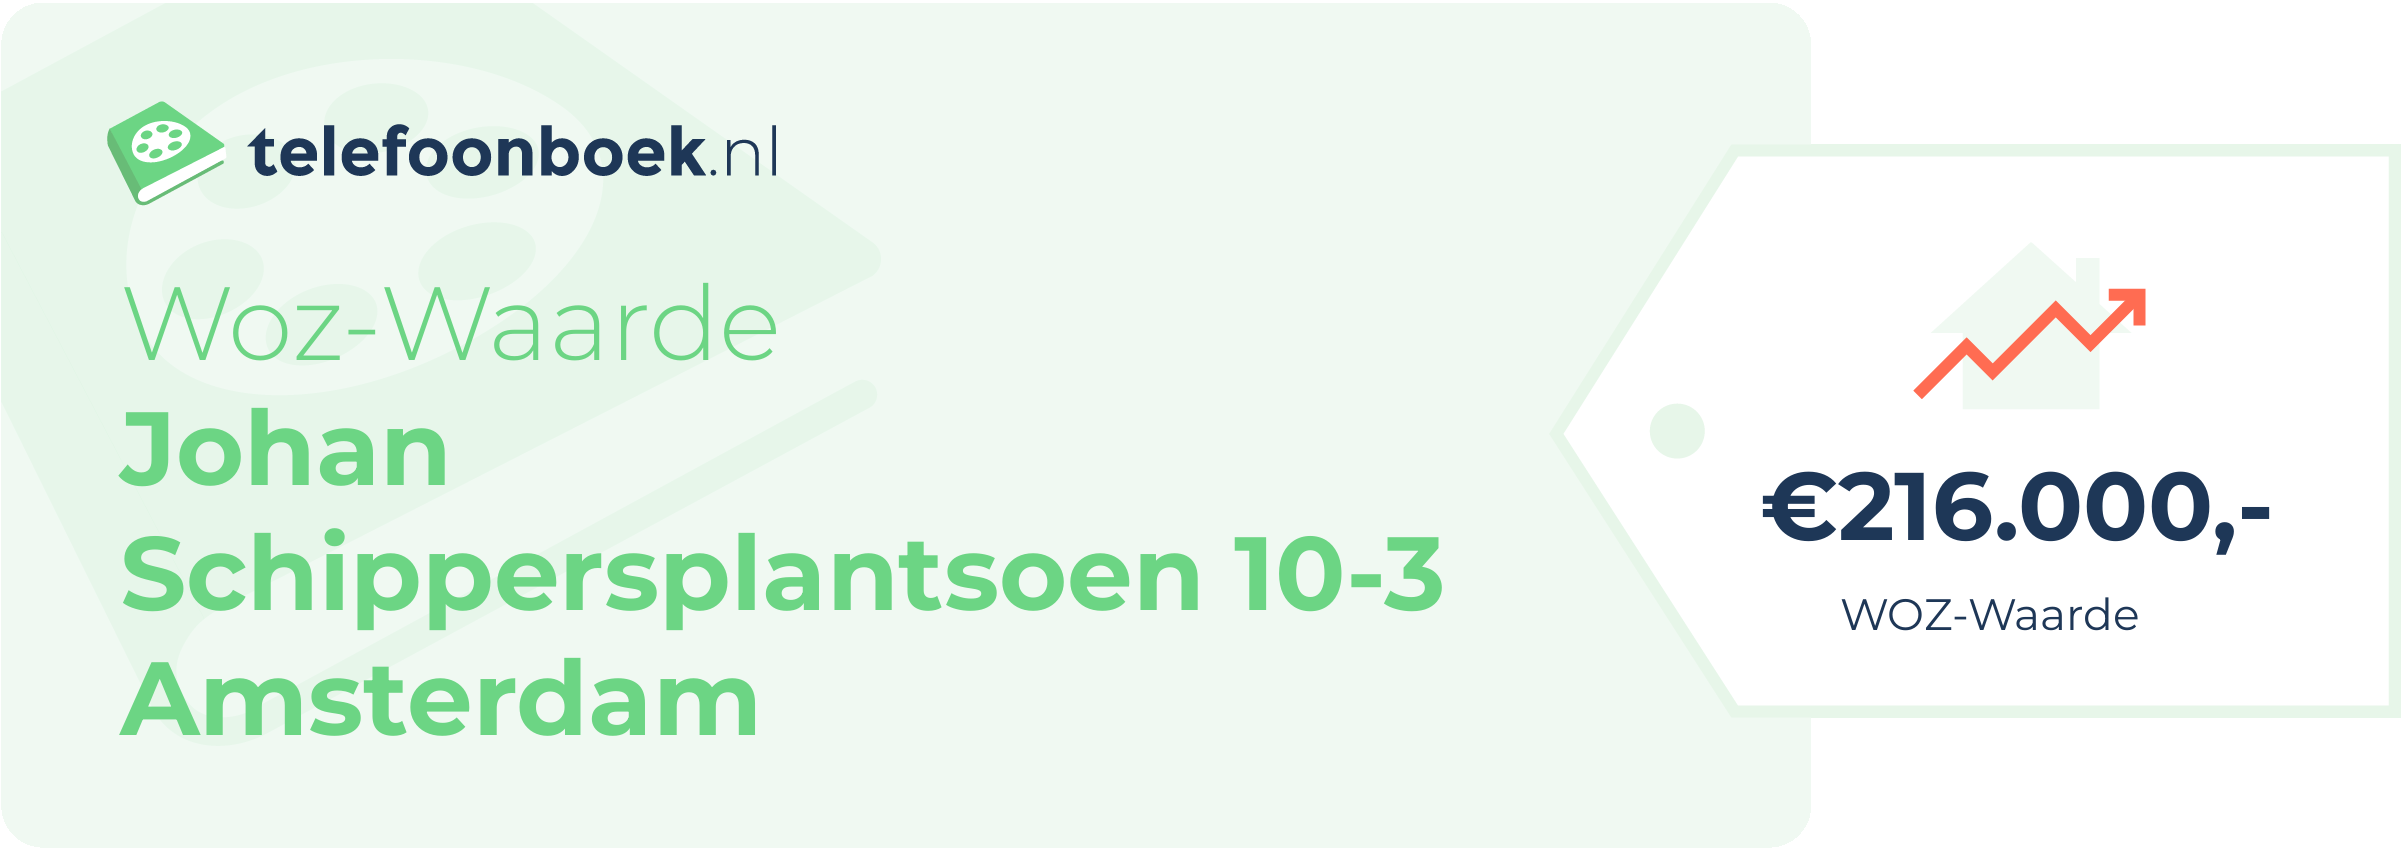 WOZ-waarde Johan Schippersplantsoen 10-3 Amsterdam